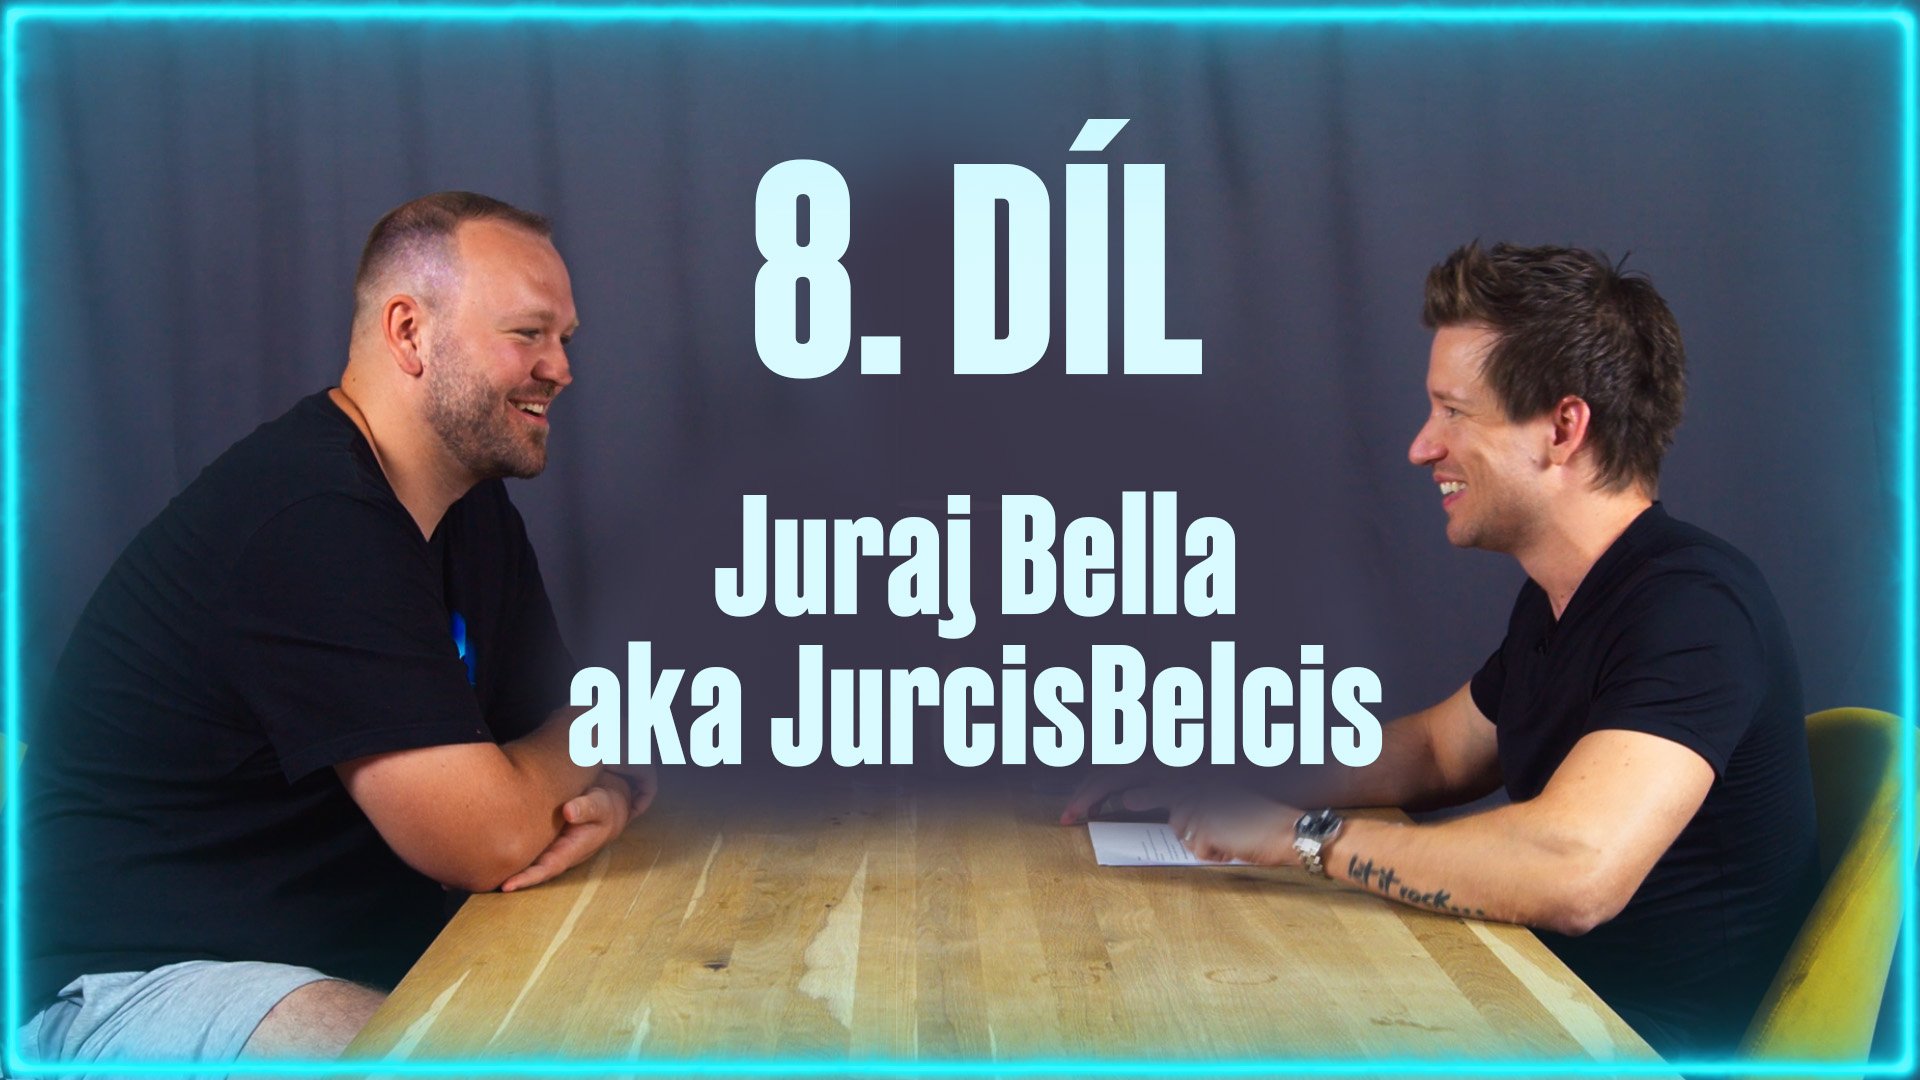 Hostem osmé epizody sázkařského podcastu je aktuálně neúspěšnější analytik stolního tenisu na Tipsportu a trenér mládeže na Slovensku -  Juraj Bella aka JurcisBelcis.